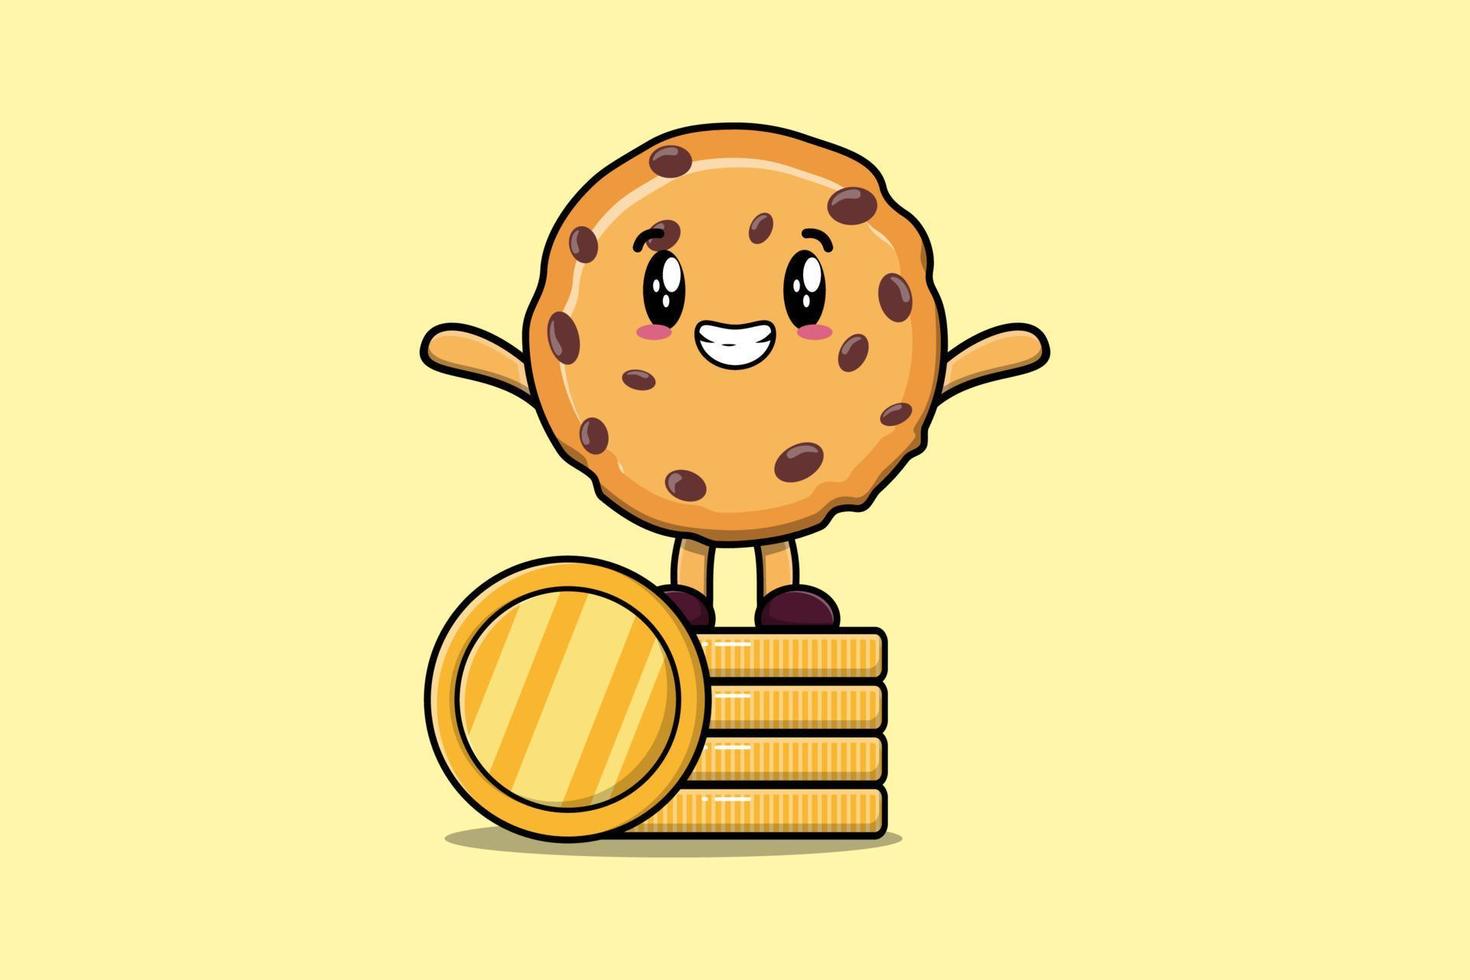 süßer Cartoon-Keks, der in einer gestapelten Goldmünze steht vektor